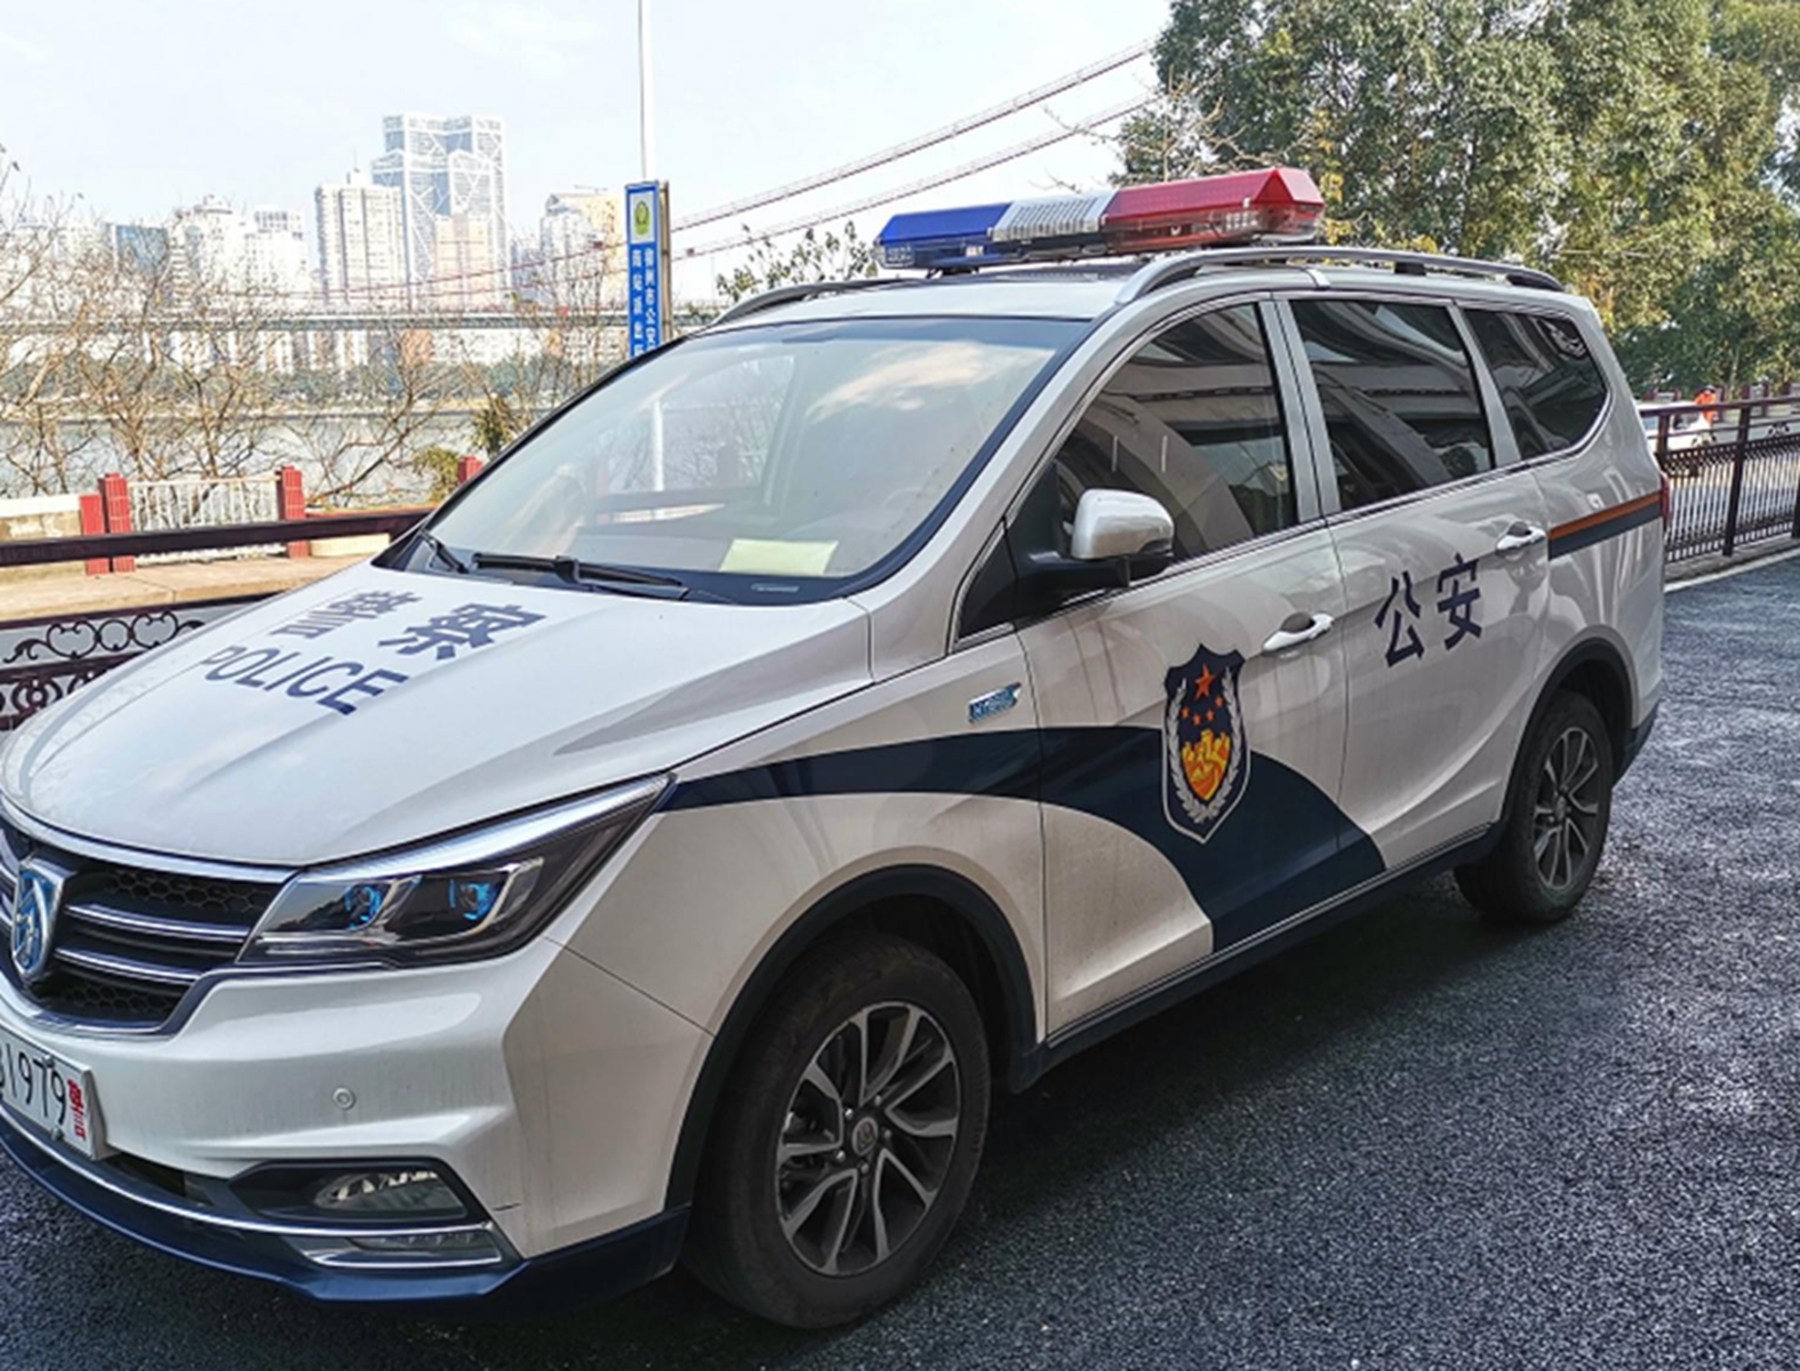 国内警车迎来"换代",上海换荣威,广西换宝骏,国产车崛起了